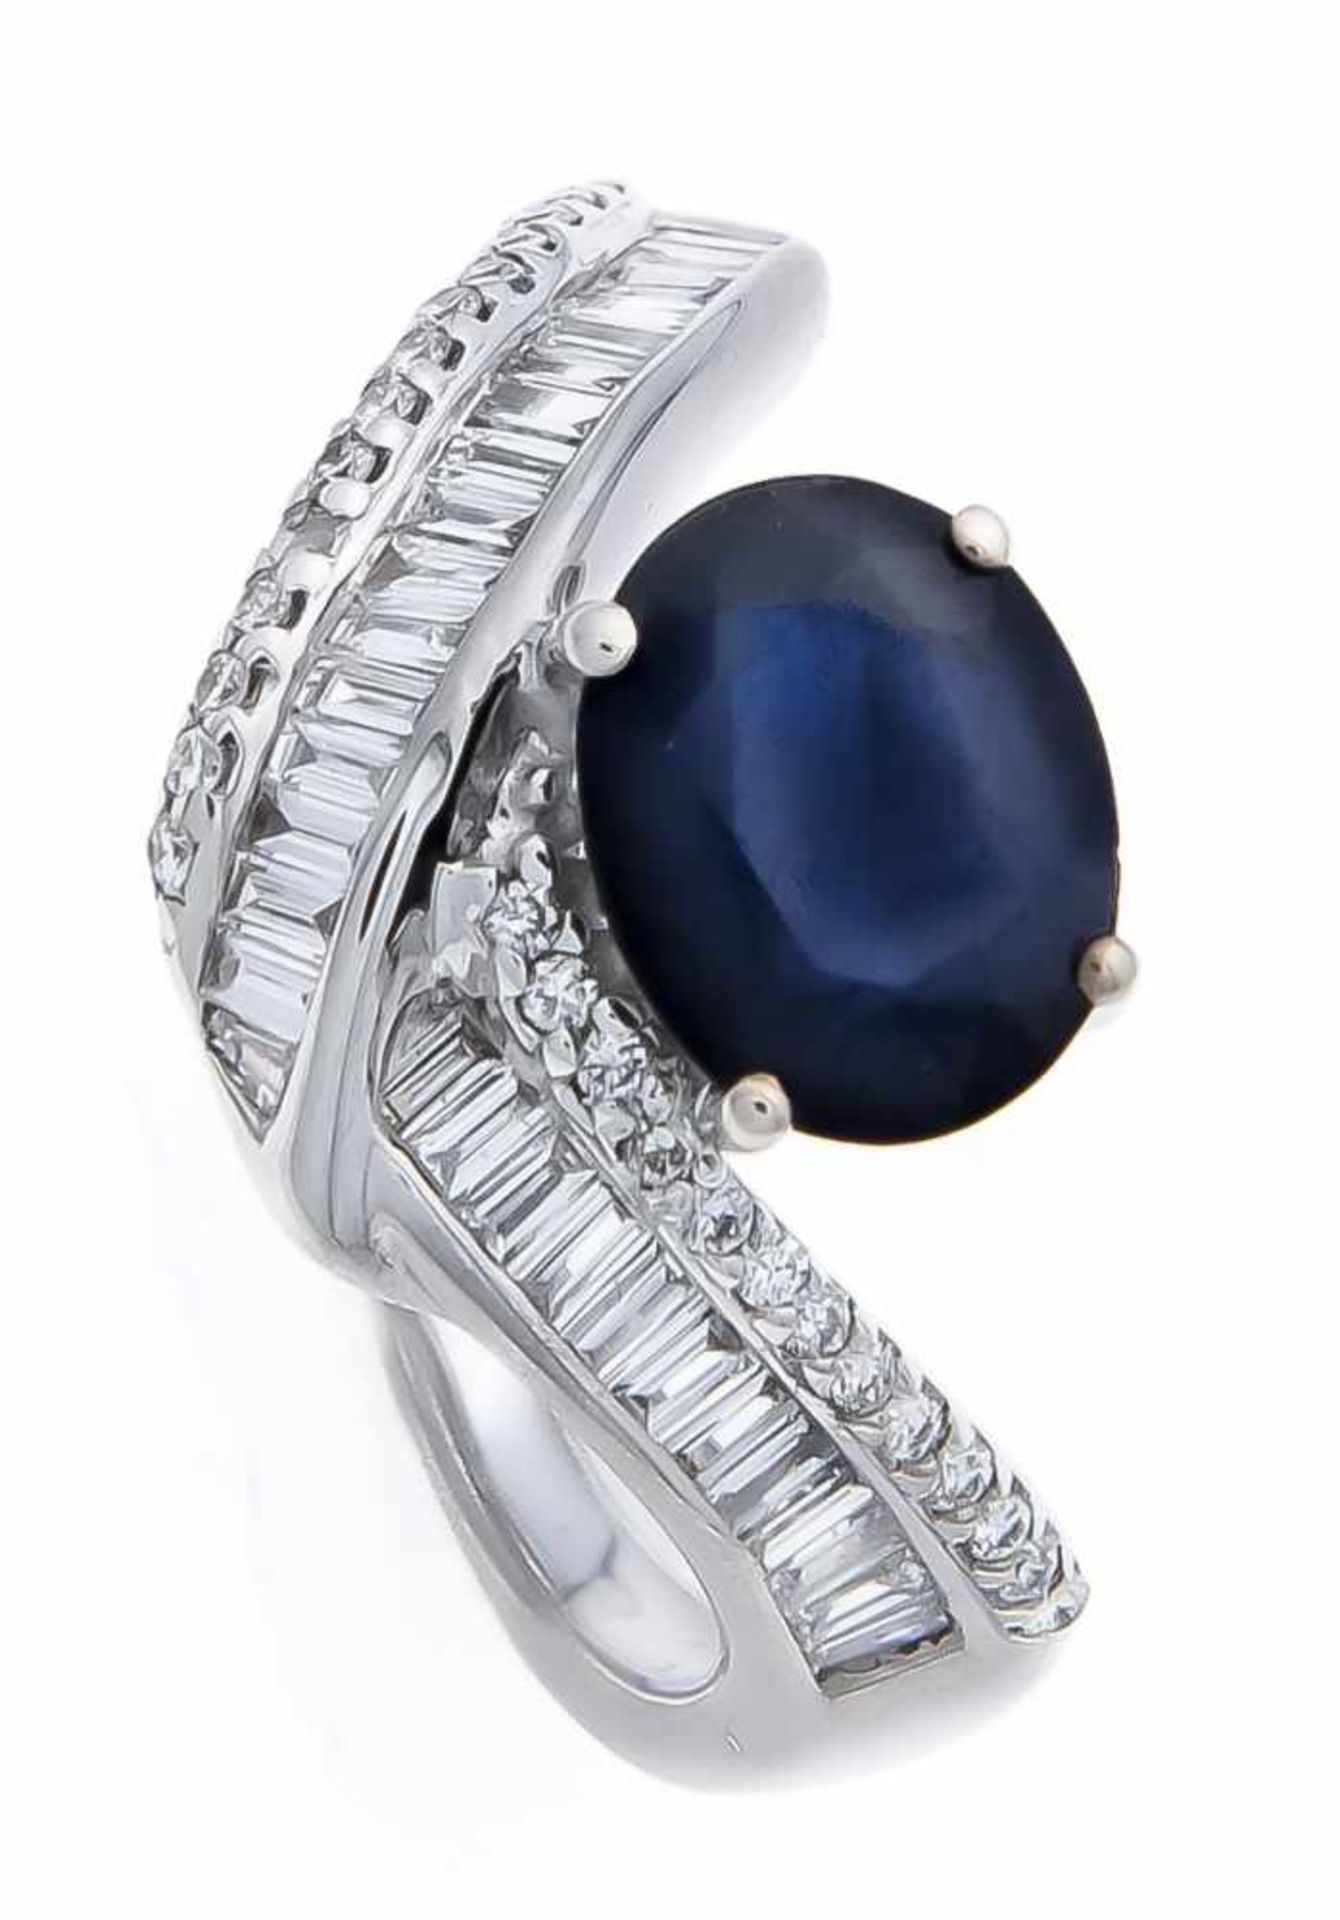 Saphir-Brillant-Ring WG 750/000 mit einem oval fac. Saphir 1,93 ct in guter Farbe, 32 Diamant-